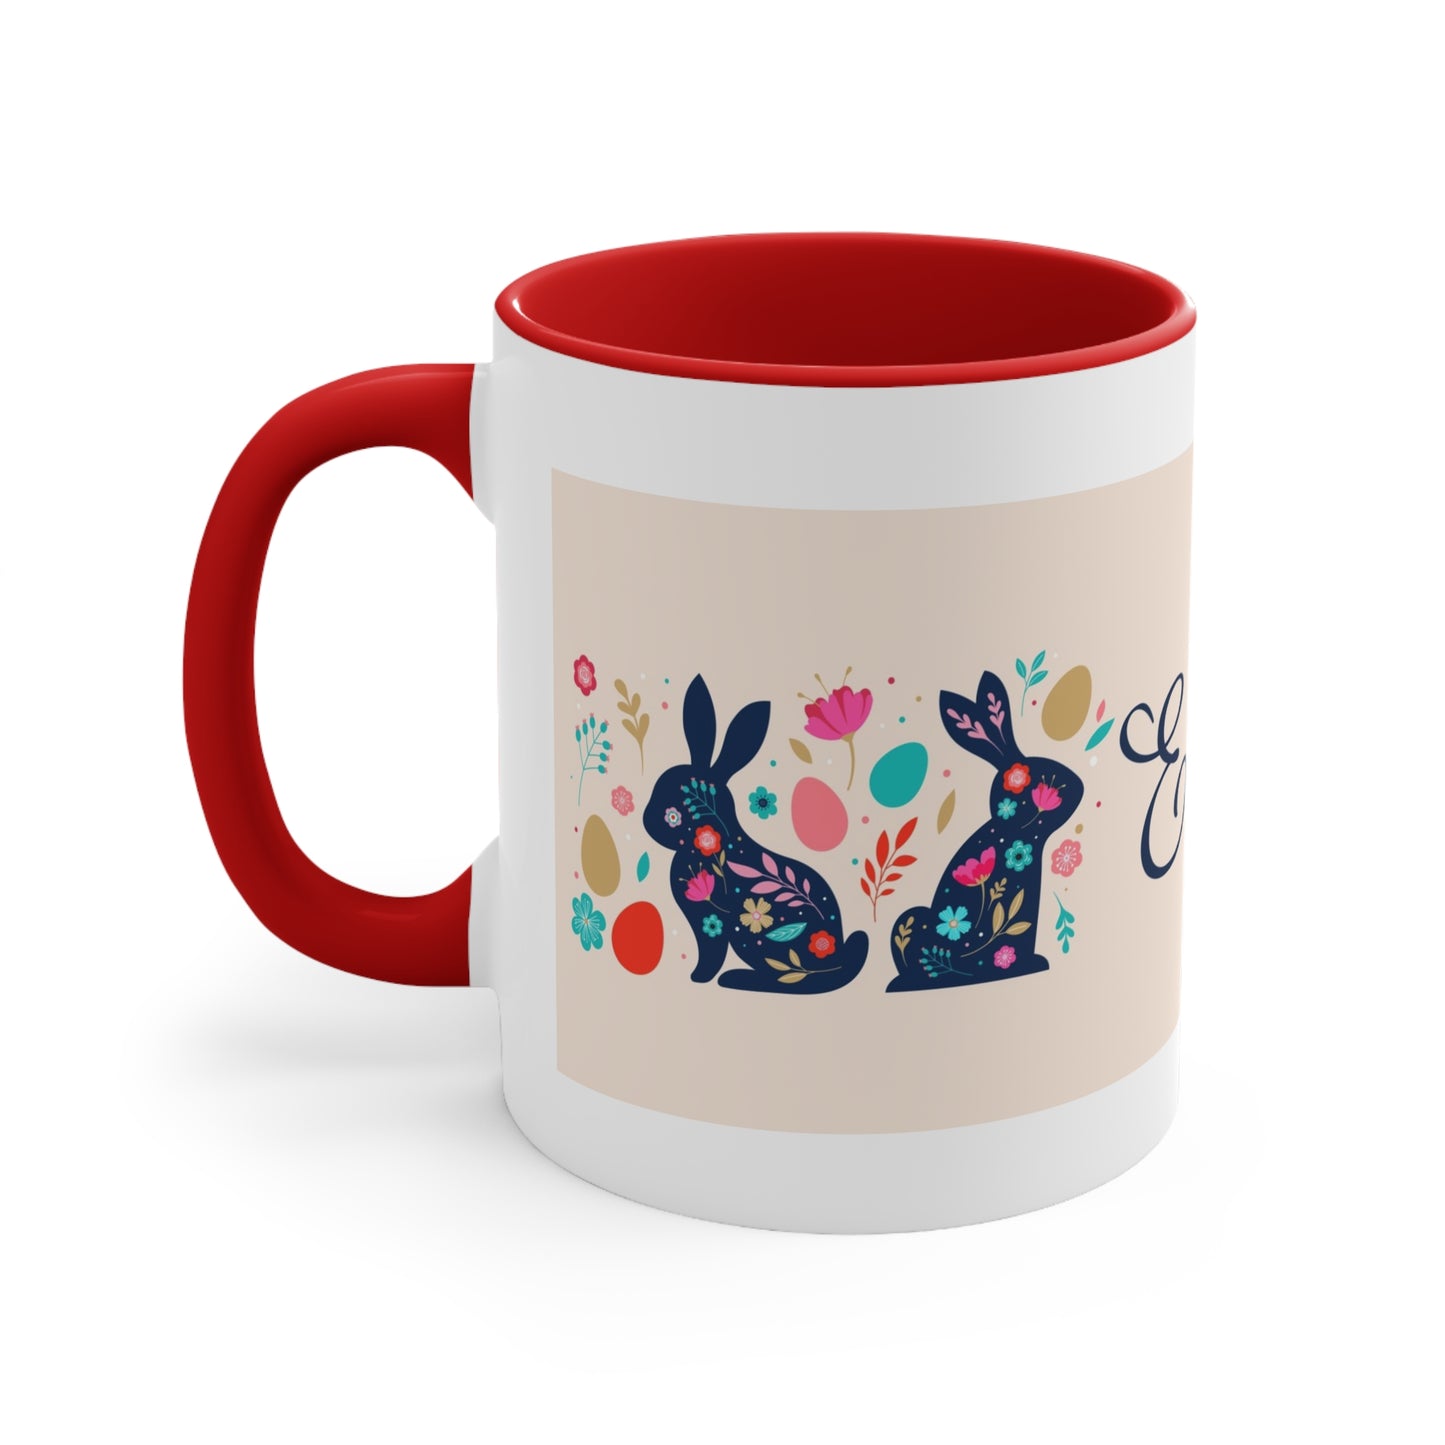 Accent Coffee Mug, 11oz Easter  Mug